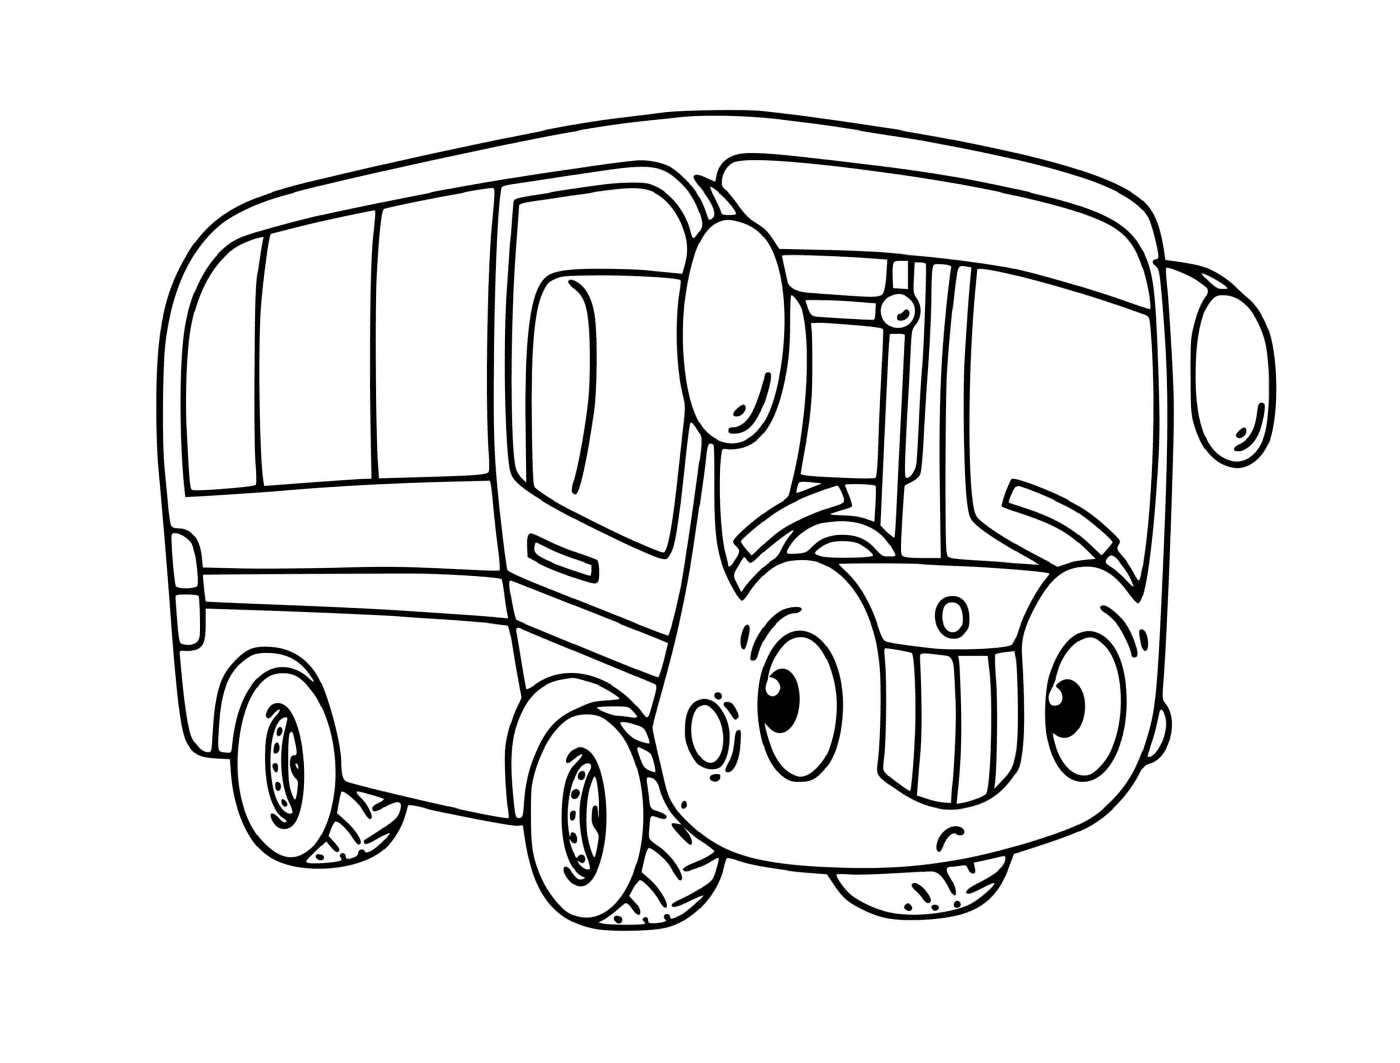  乘公共汽车送儿童上学 